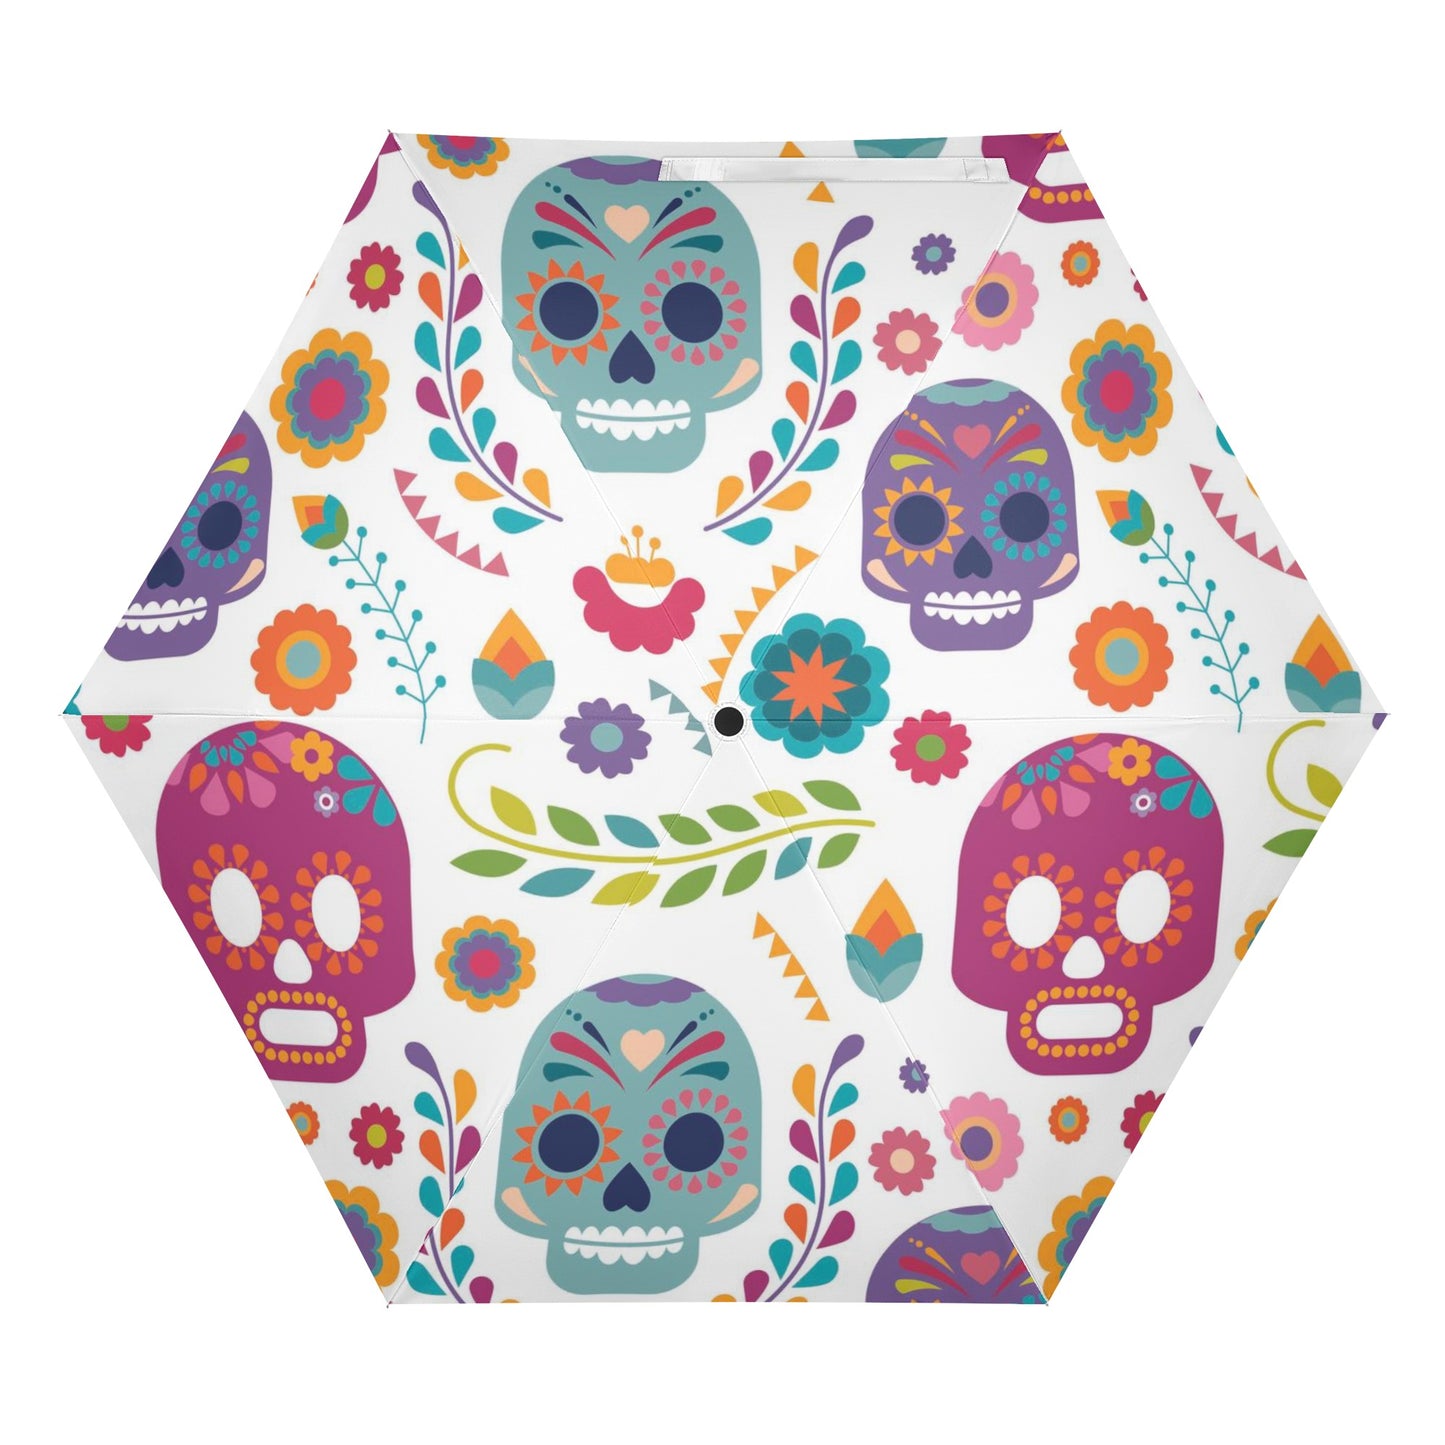 Mexican sugar skull All Over Print Umbrella